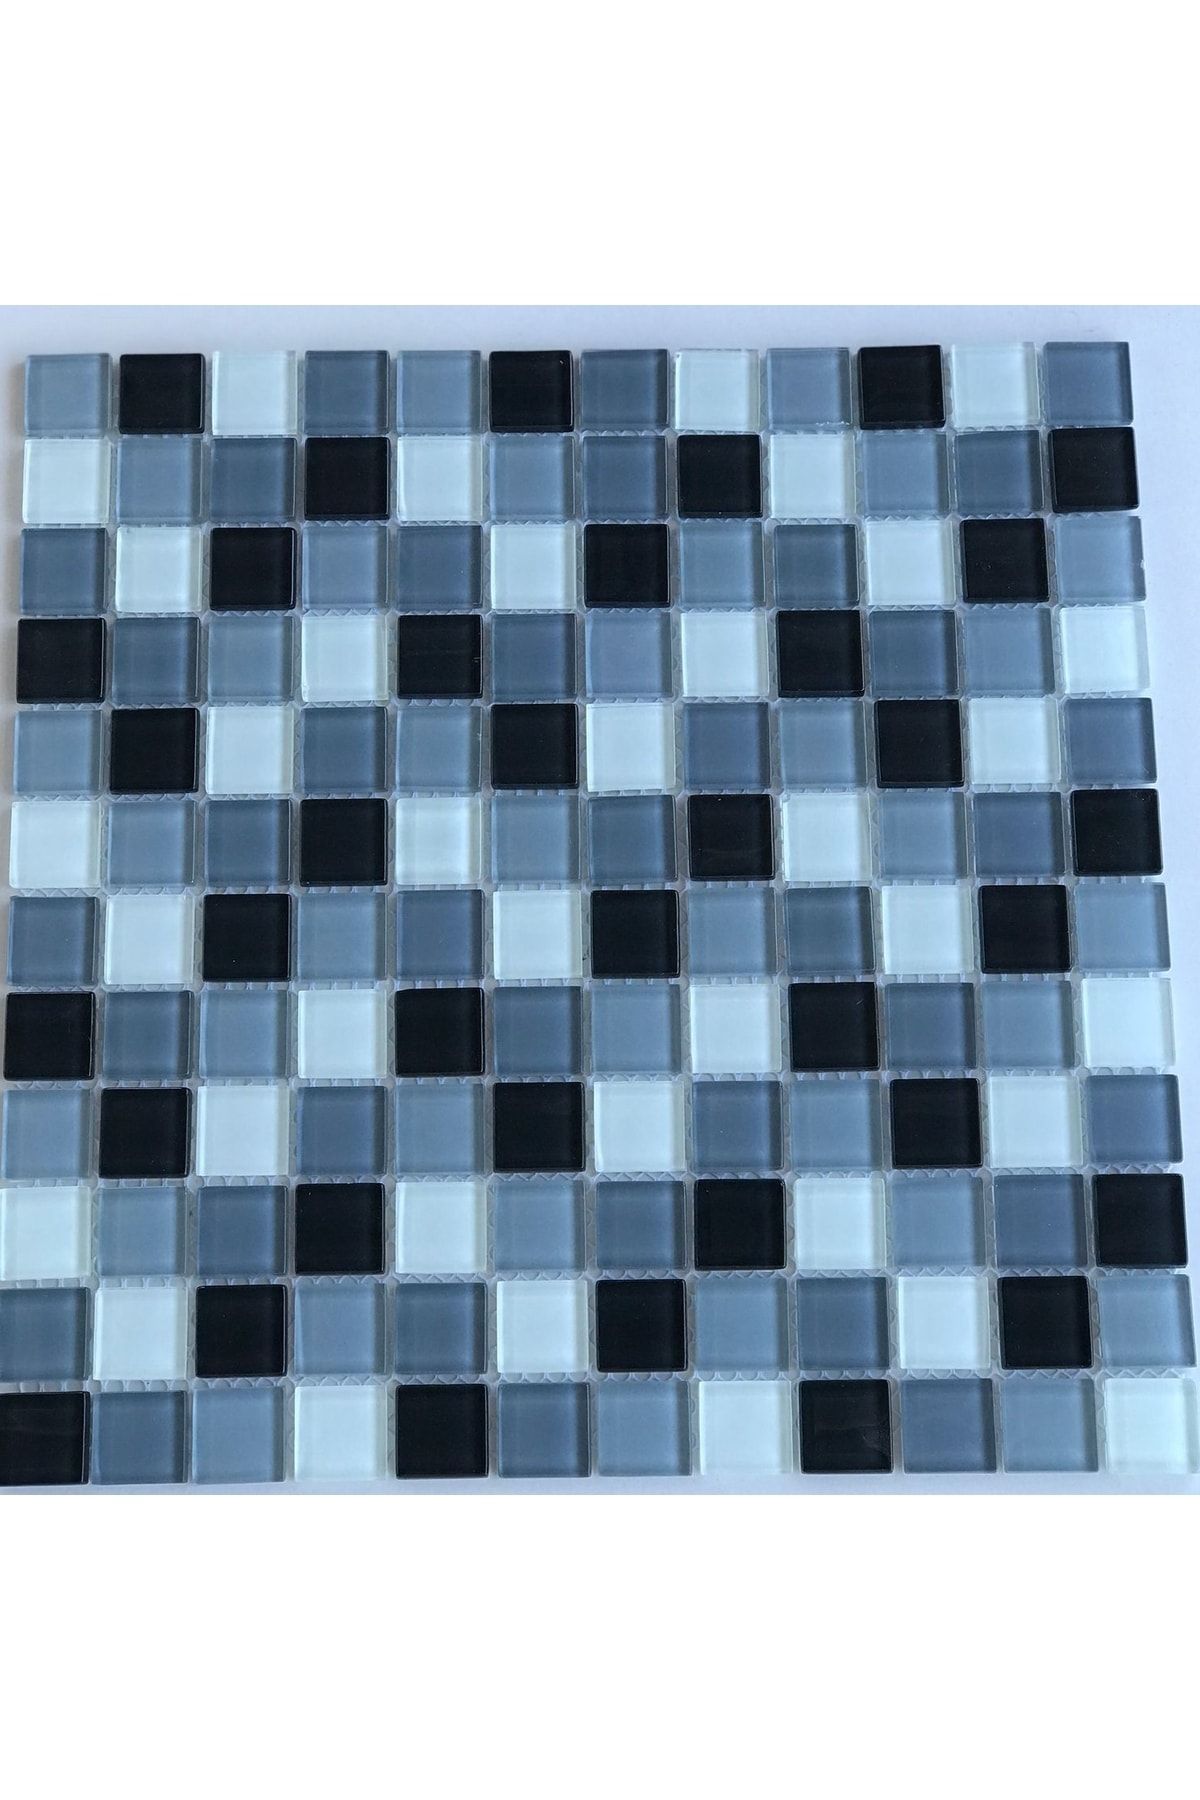 KALE Mutfak Tezgah Arası Kristal Cam Mozaik 61sm3007 23x23